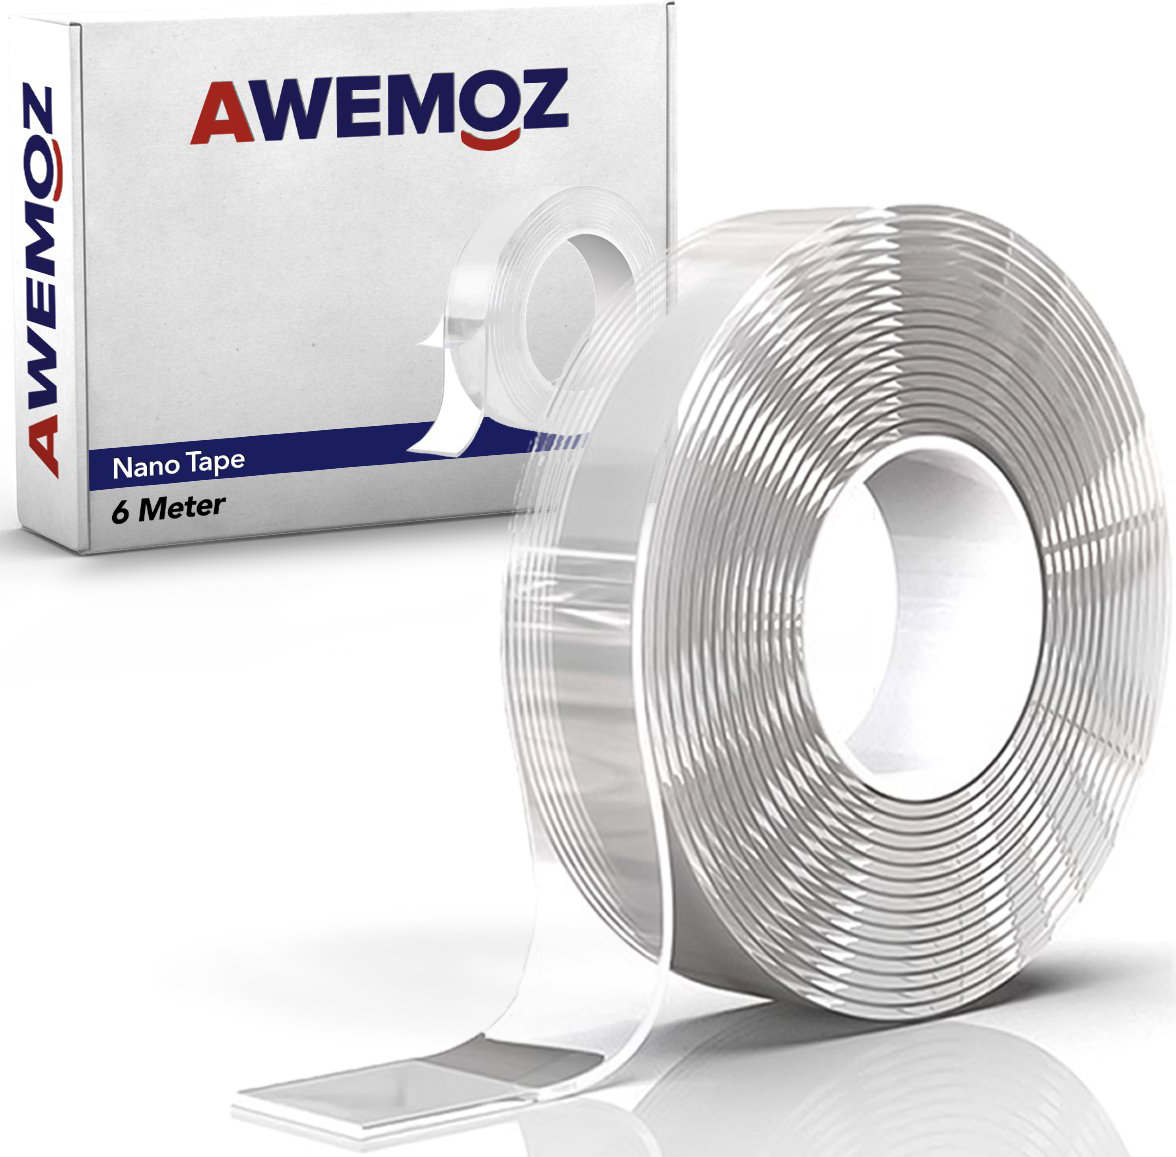 Dubbelzijdig nano tape 2,5cm x 6m Awemoz (1 rol)